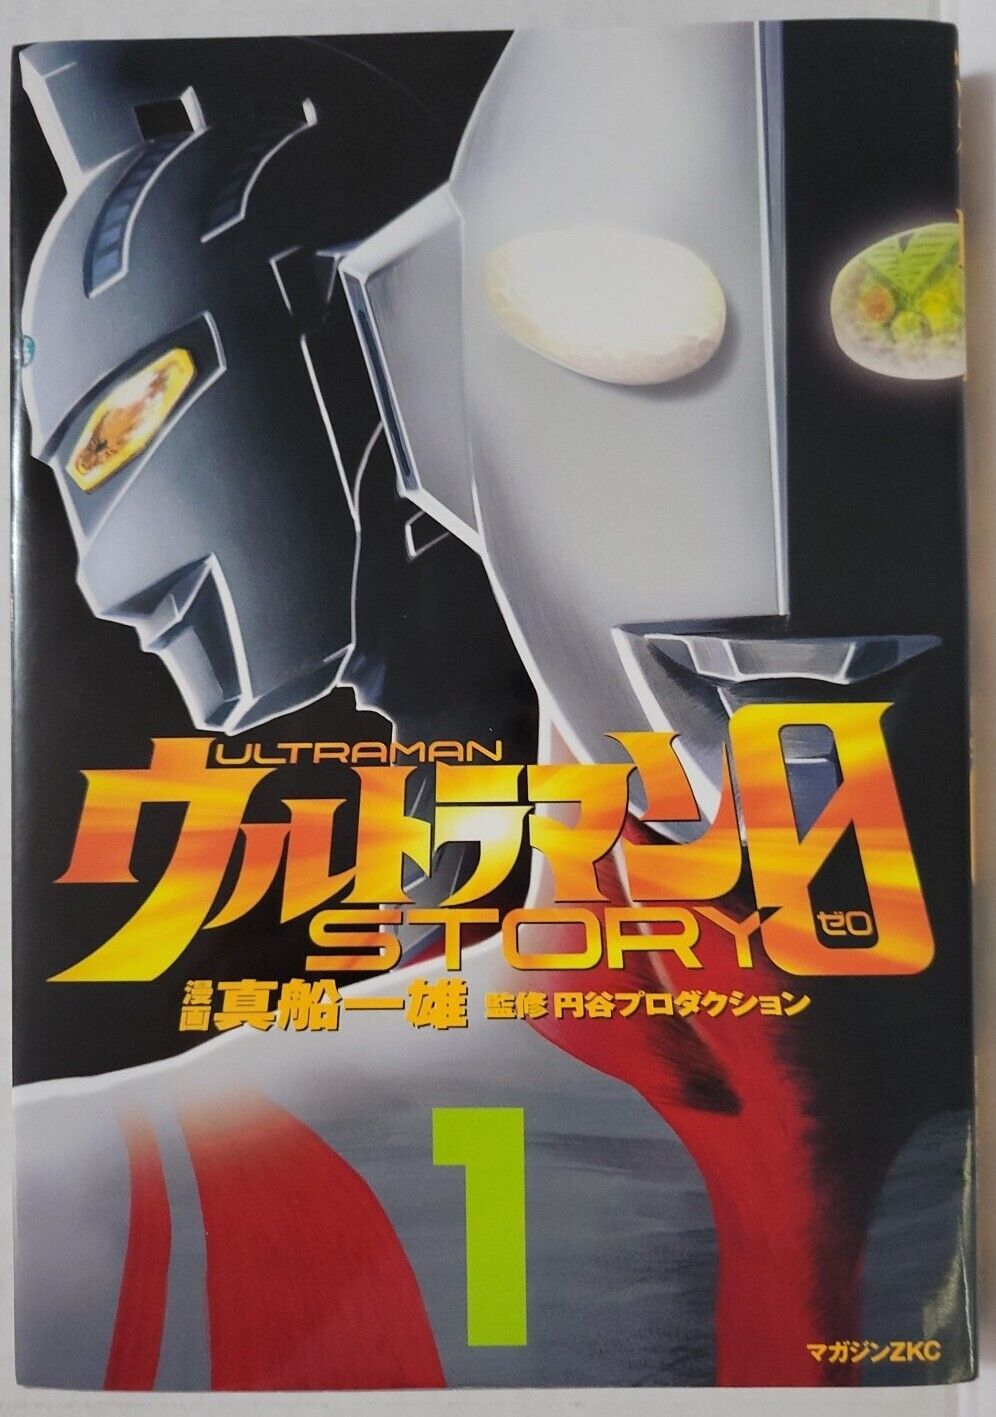 Ultraman Story 0 Vol. 1 Japanese Manga Comic 2005 Import ZKC B&W Kazuo Mafune 